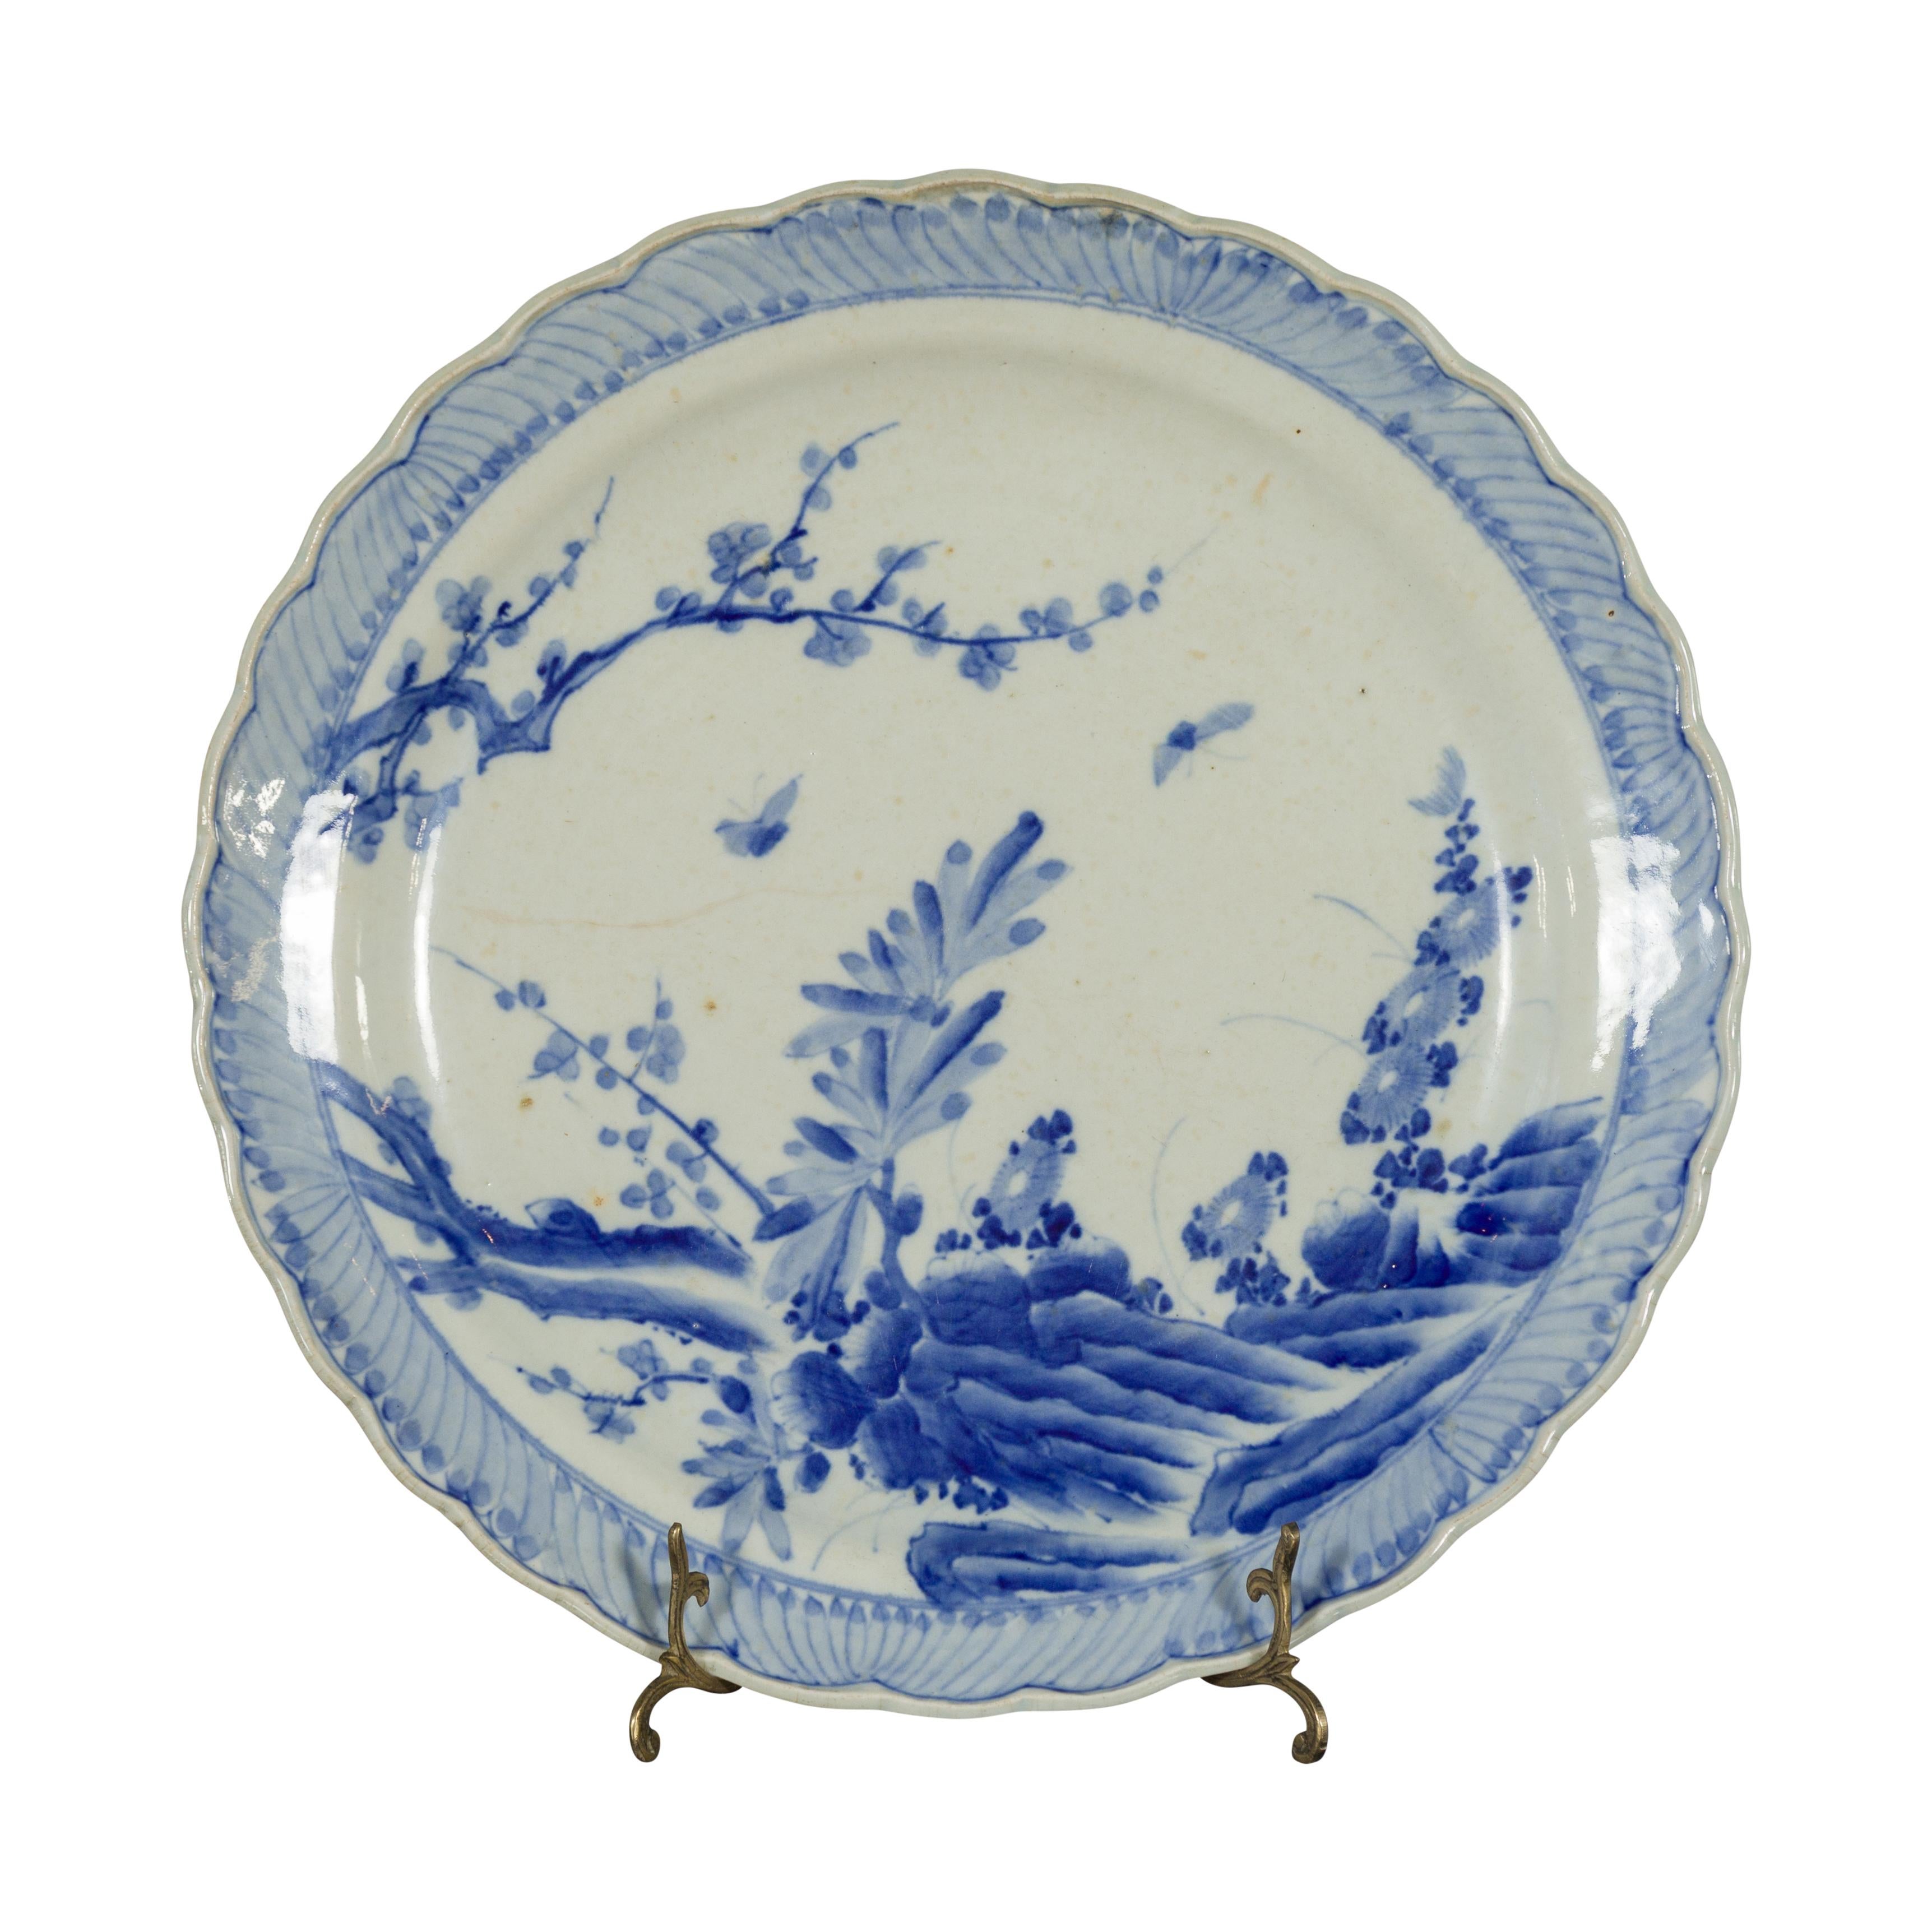 Ein japanischer Porzellanteller aus dem 19. Jahrhundert mit handgemaltem blau-weißem Dekor aus blühenden Bäumen, Blumen und Schmetterlingen. Dieser Porzellanteller, der im 19. Jahrhundert in Japan hergestellt wurde, zeigt ein zartes blau-weißes